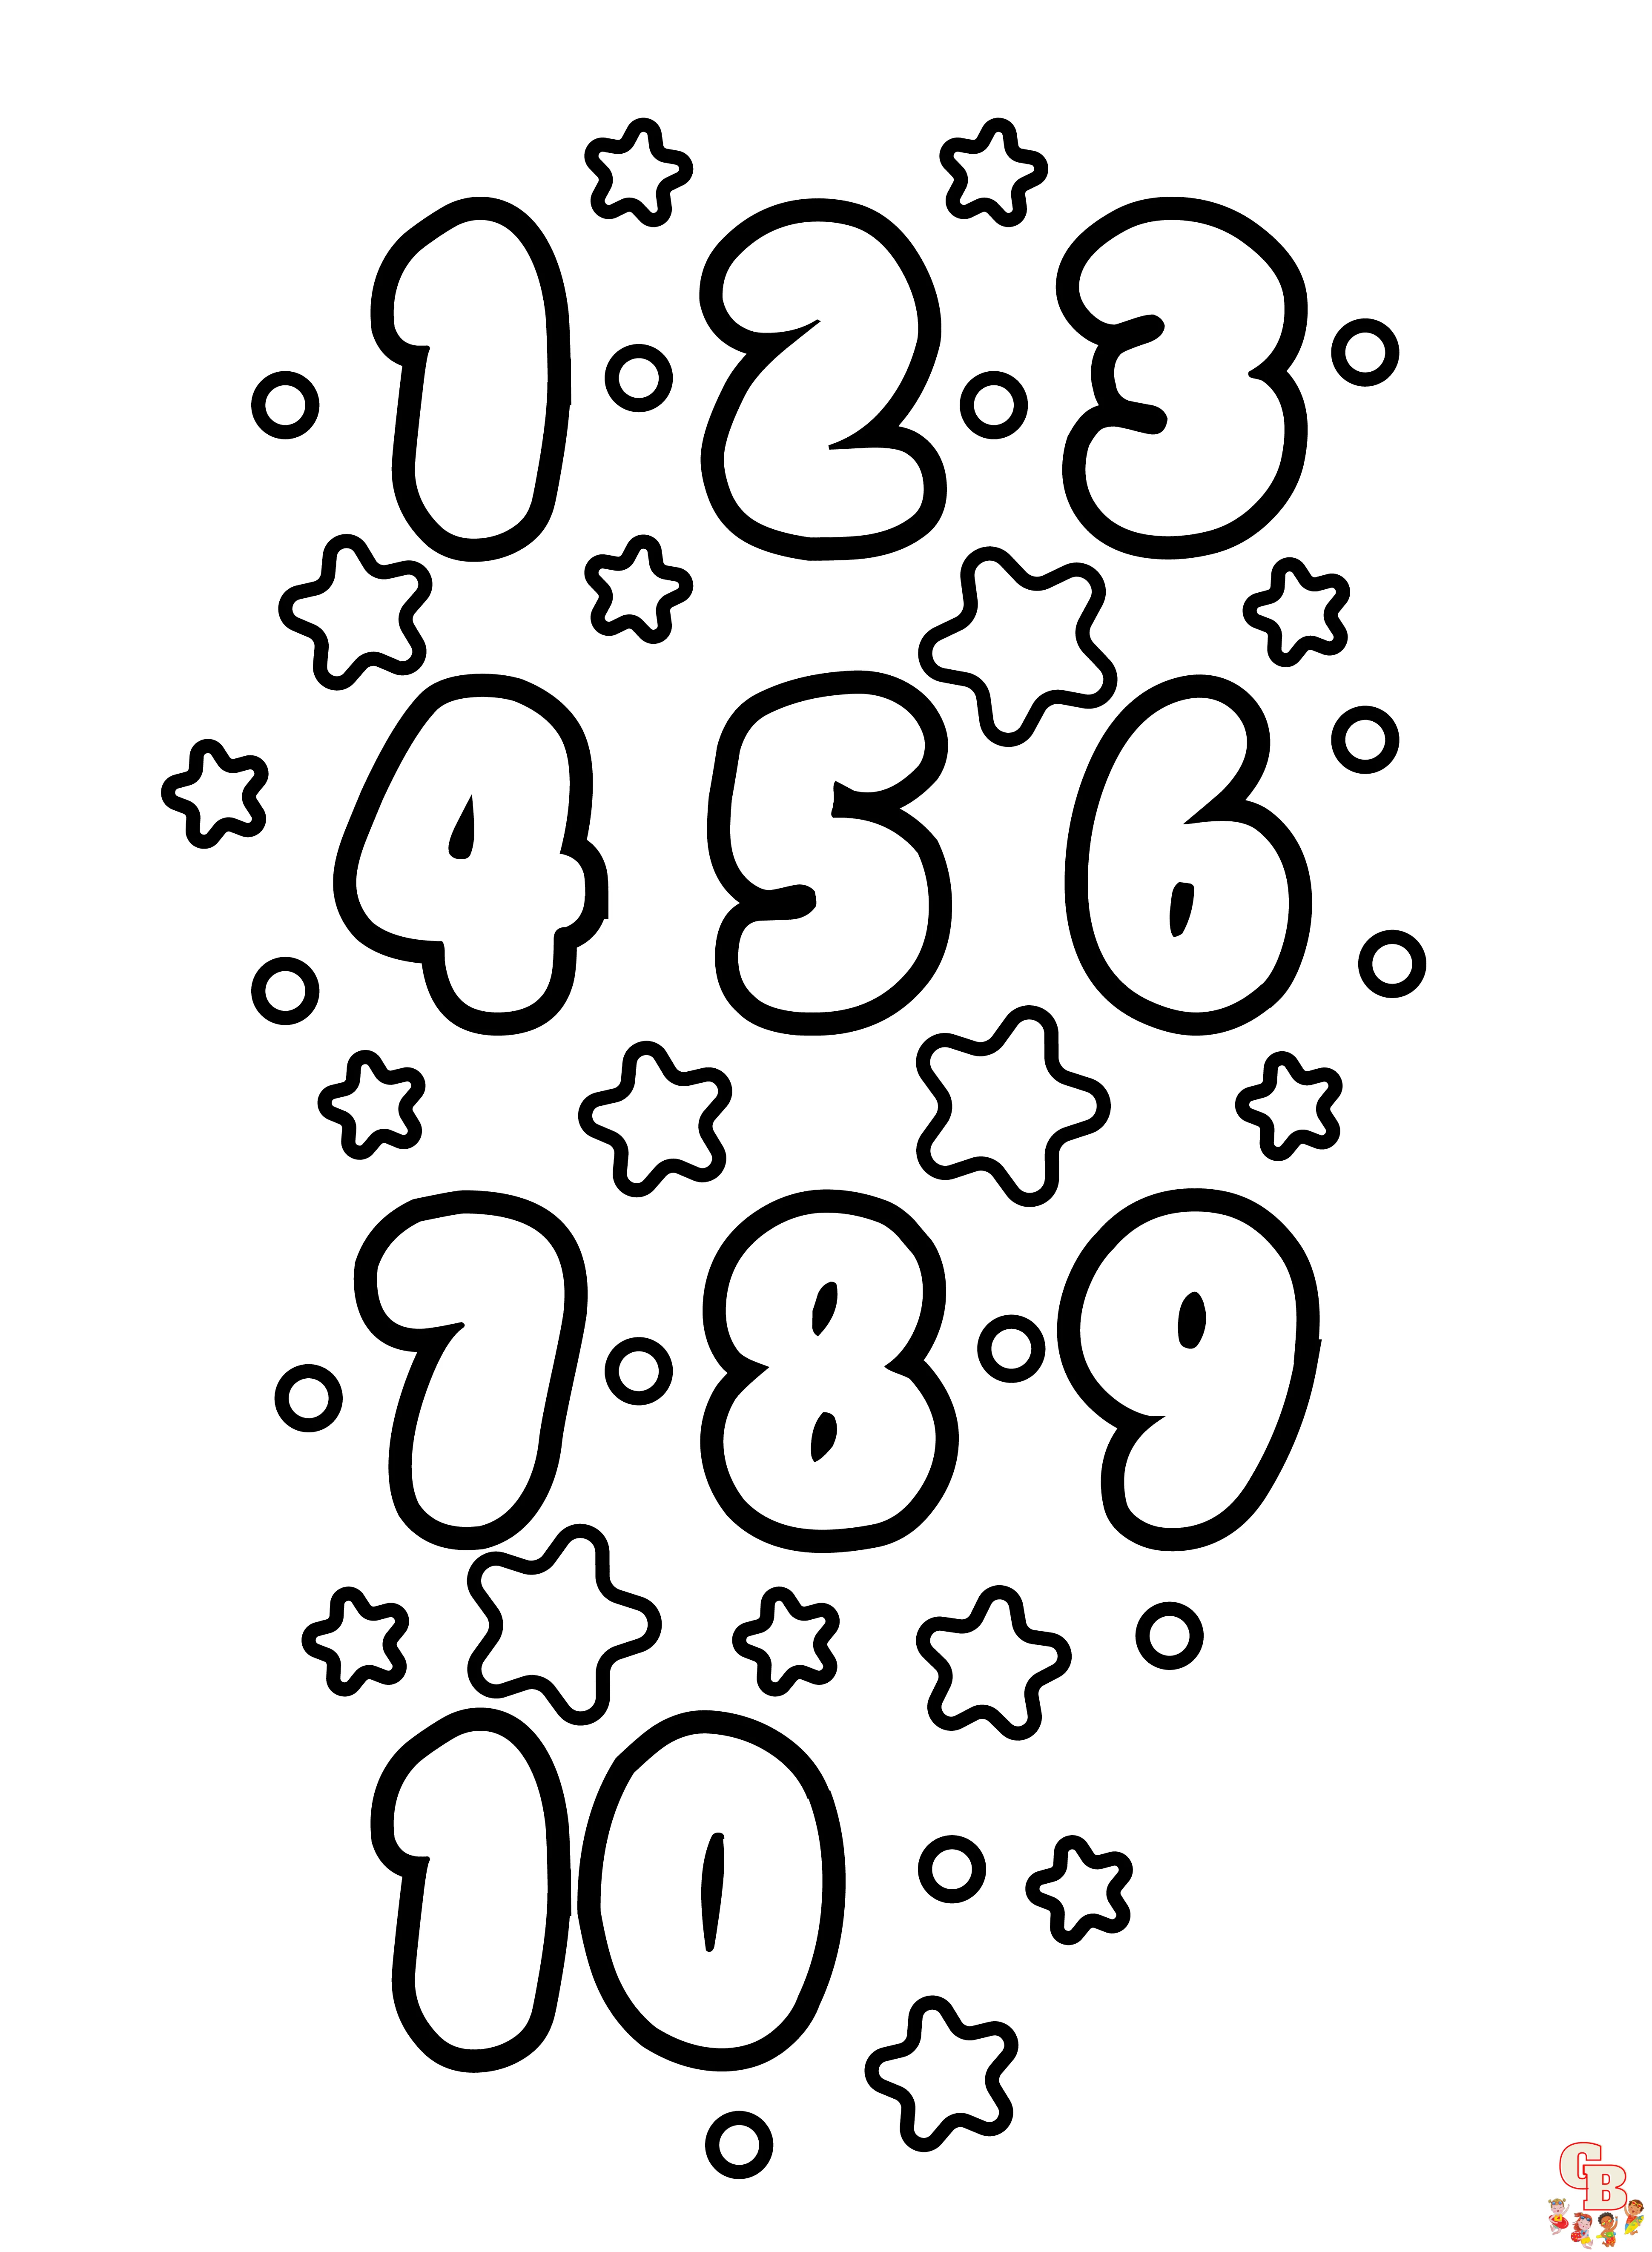 Disegni da colorare con numeri stampabili gratuiti per bambini e adulti